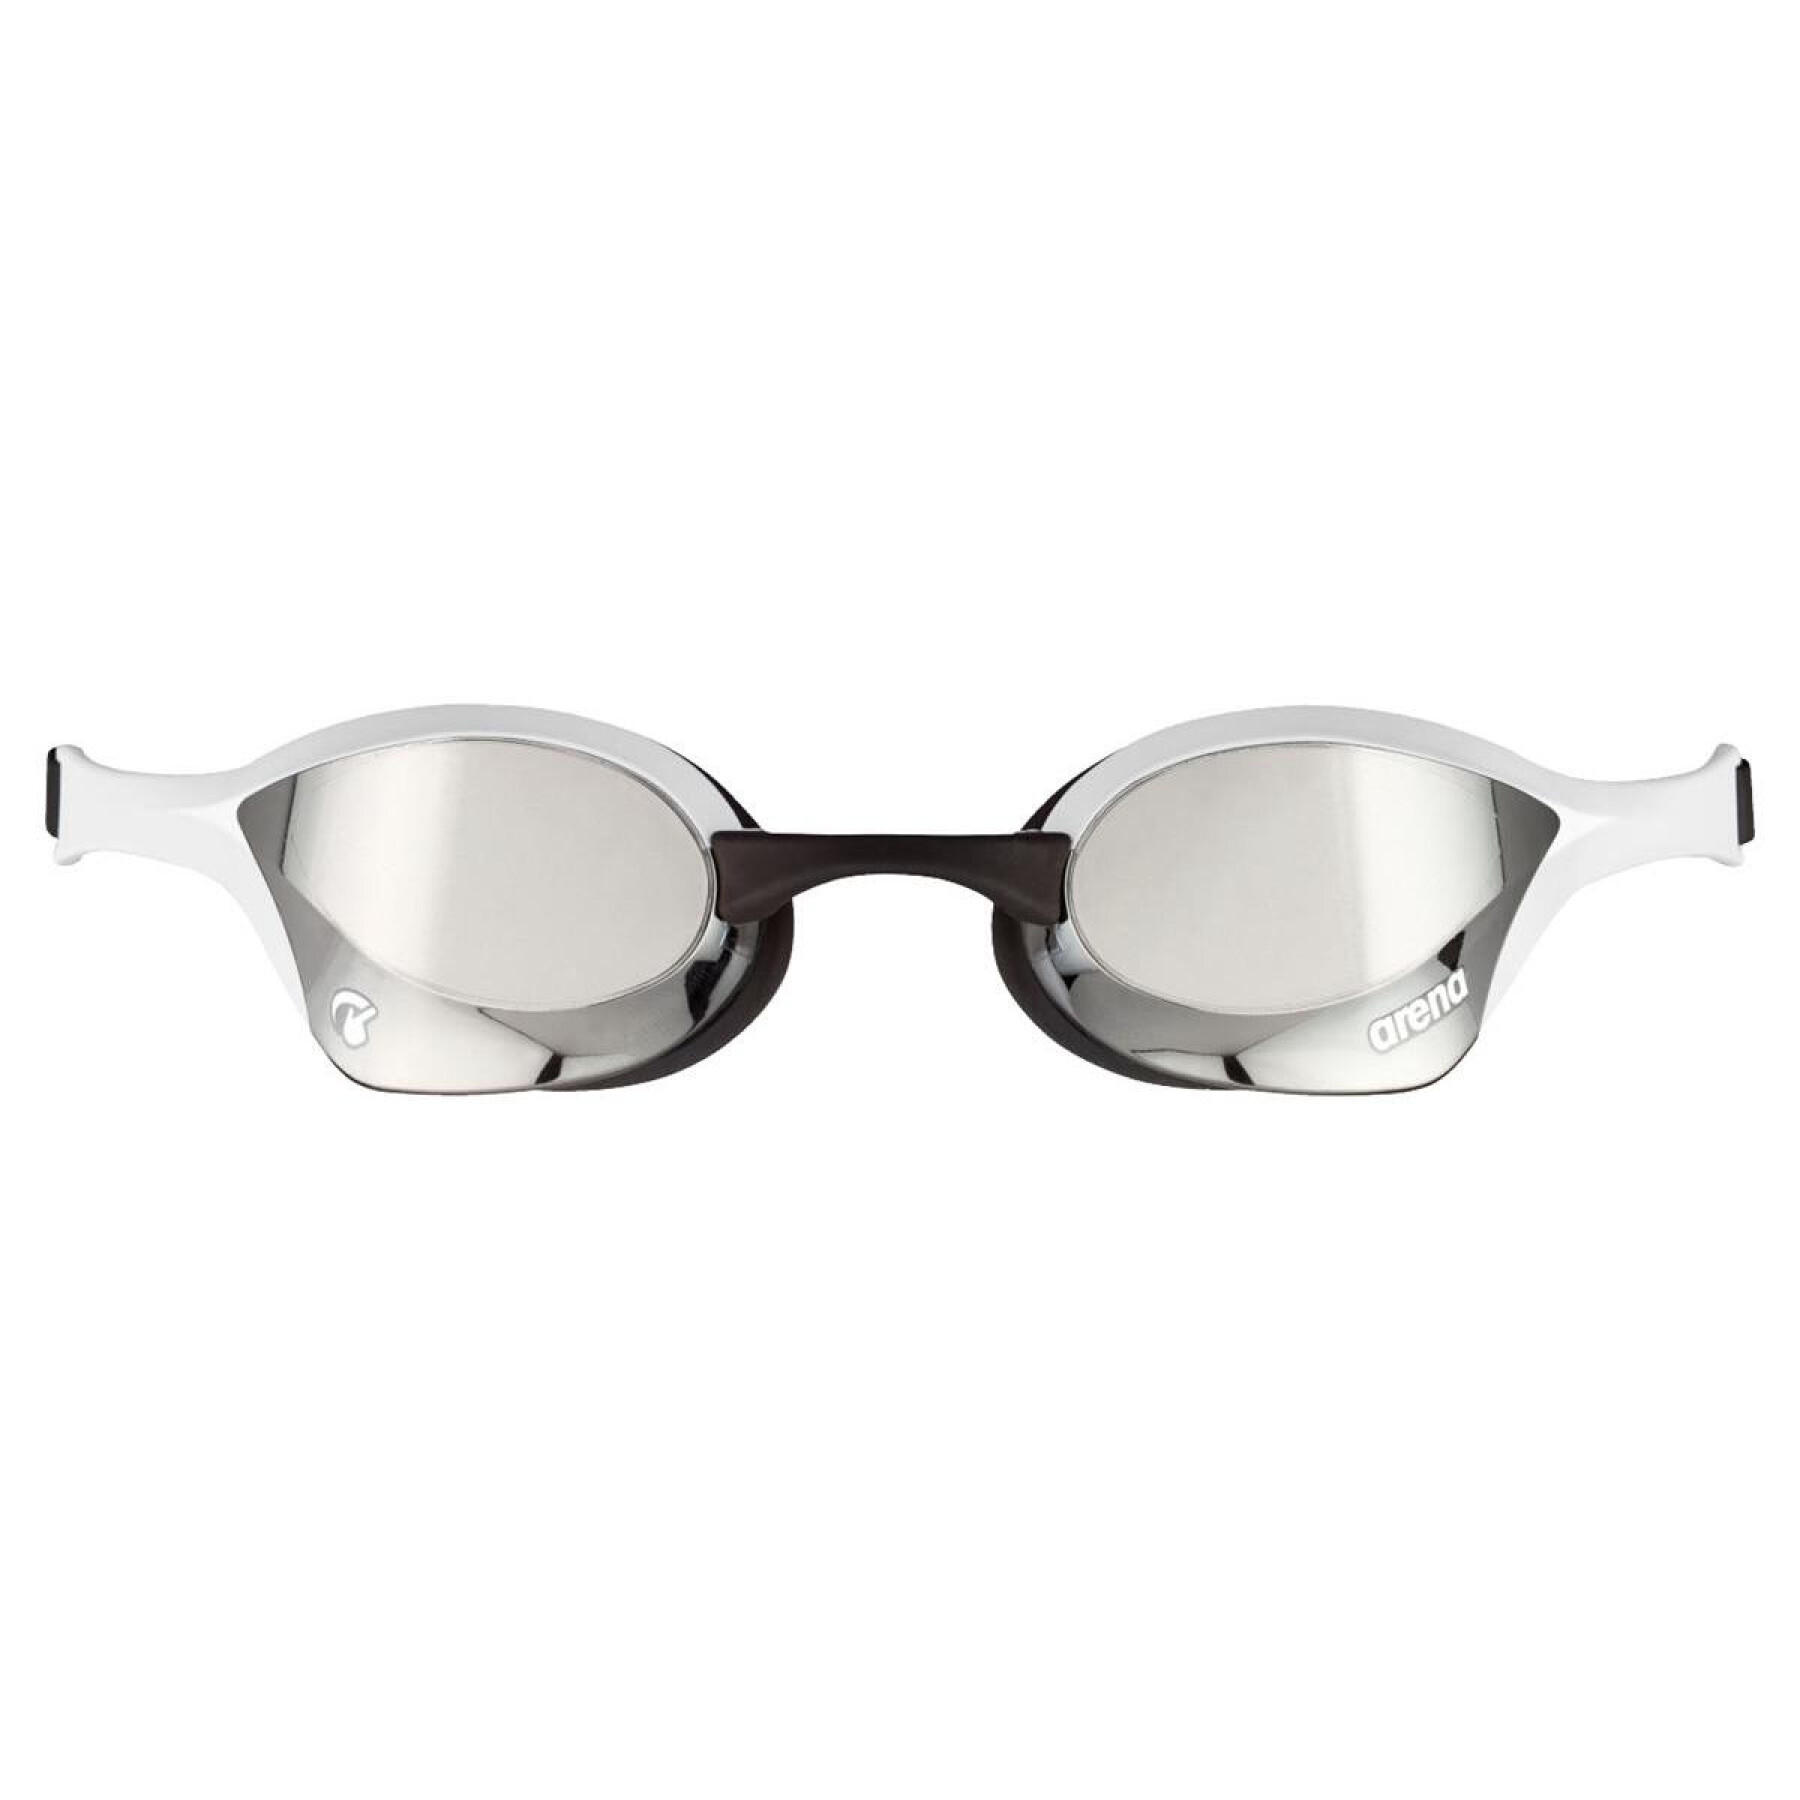 arena - Descubre las gafas de natación con tecnología Swipe